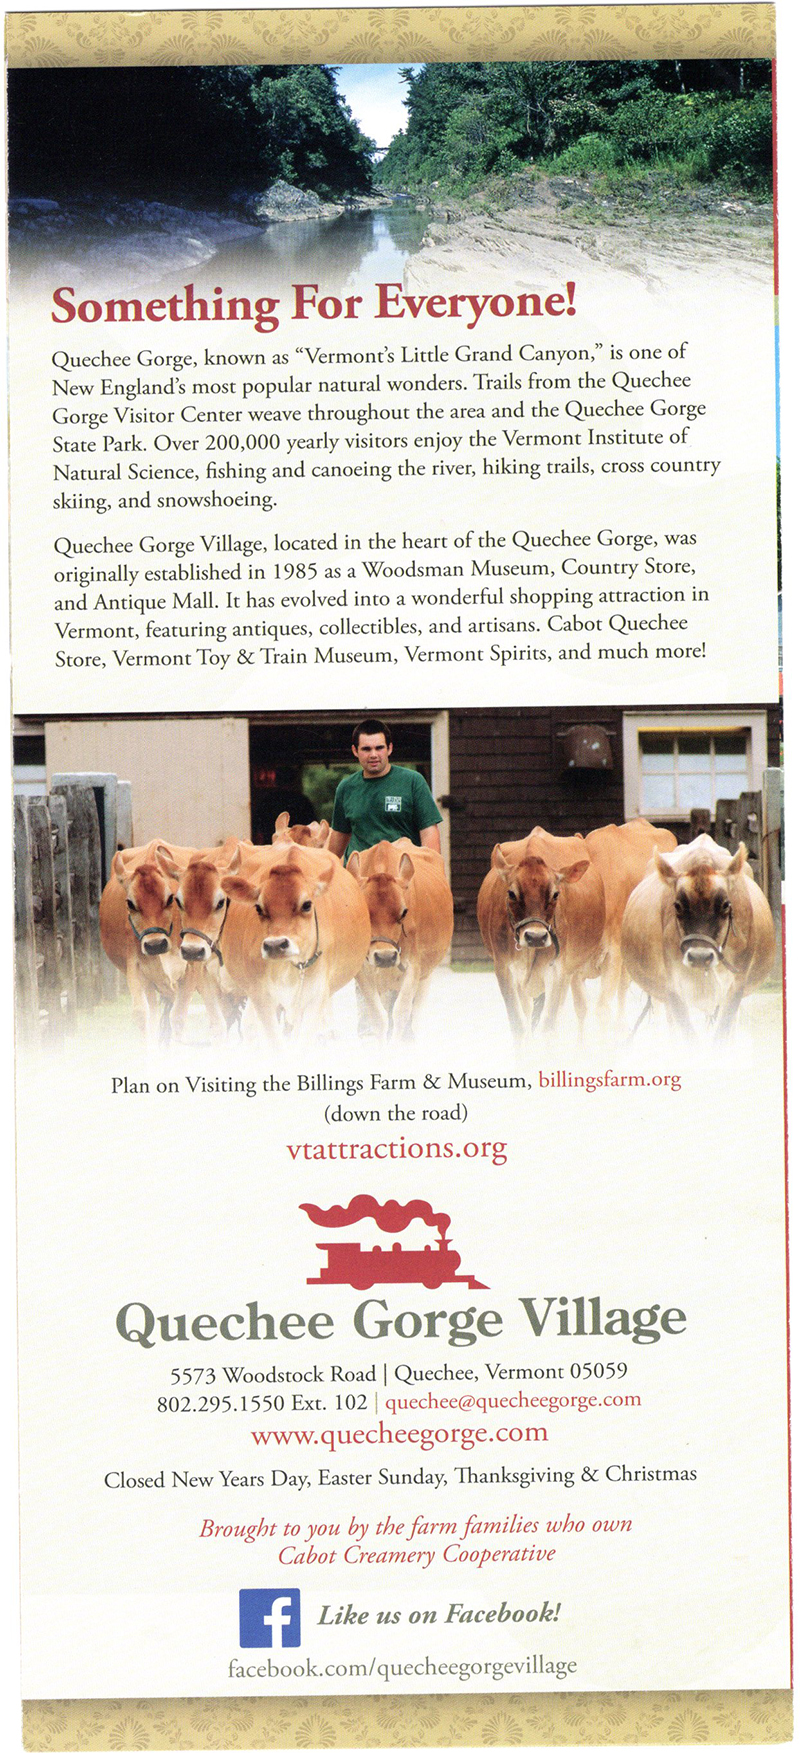 Quechee Gorge Village brochure thumbnail